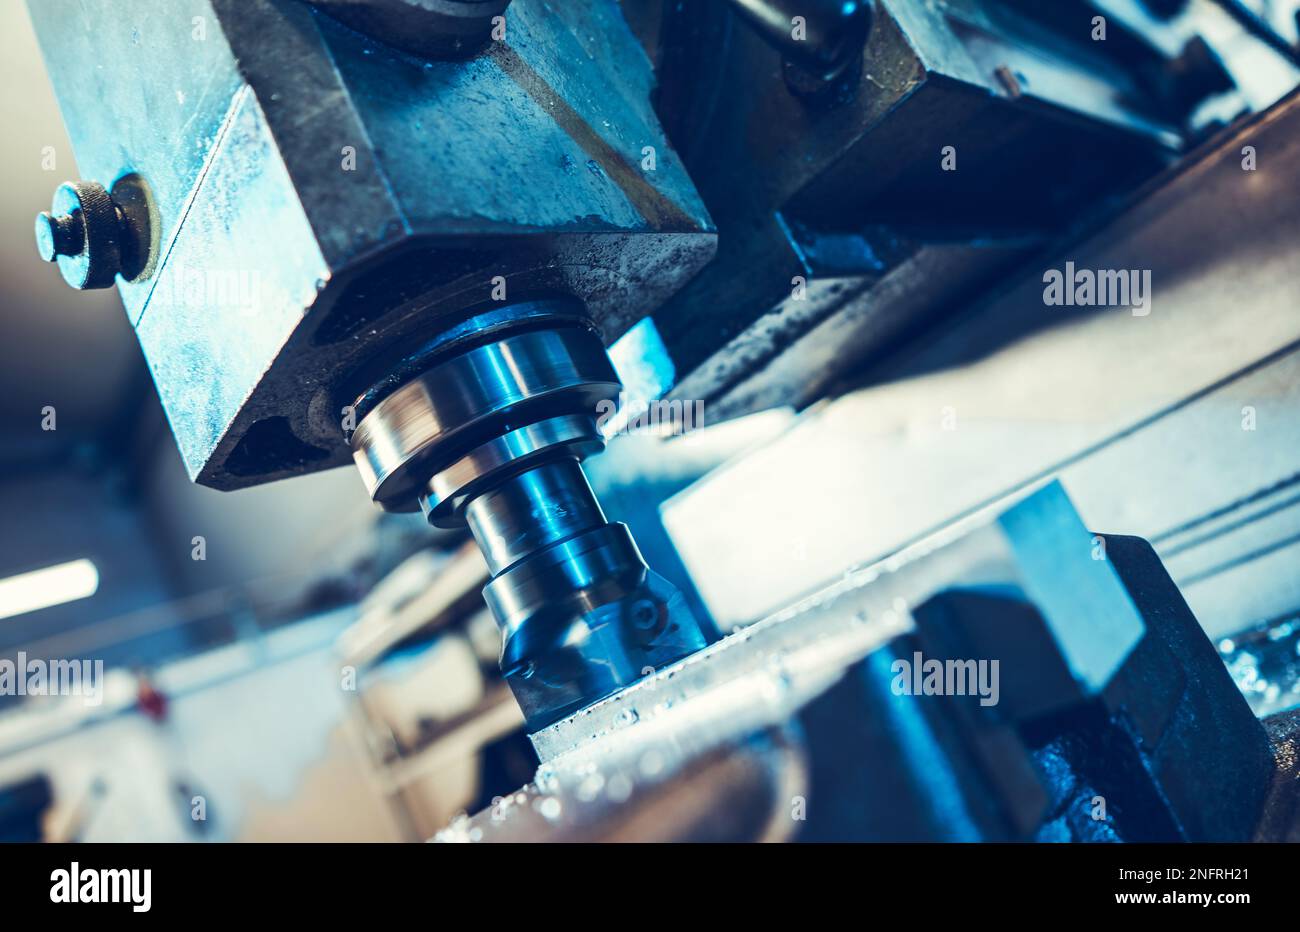 Nahaufnahme der industriellen CNC-Fräsmaschine während des Bearbeitungsprozesses. Thema Produktionstechnologie und Produktionsausrüstung. Stockfoto